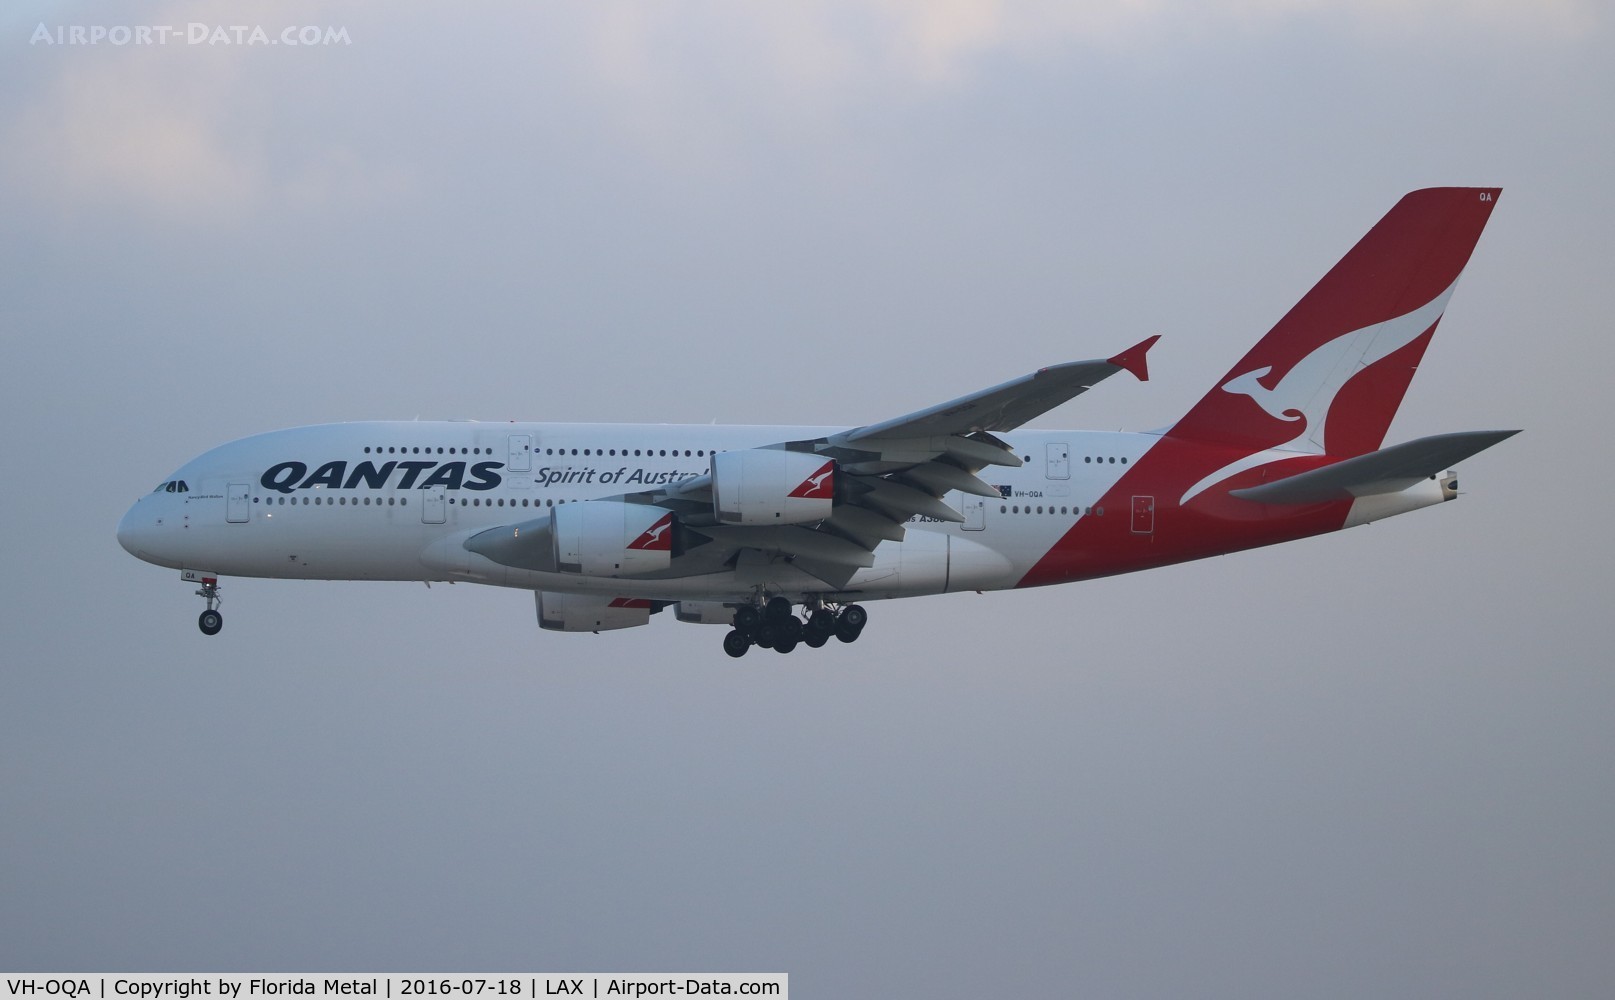 VH-OQA, 2008 Airbus A380-842 C/N 014, Qantas